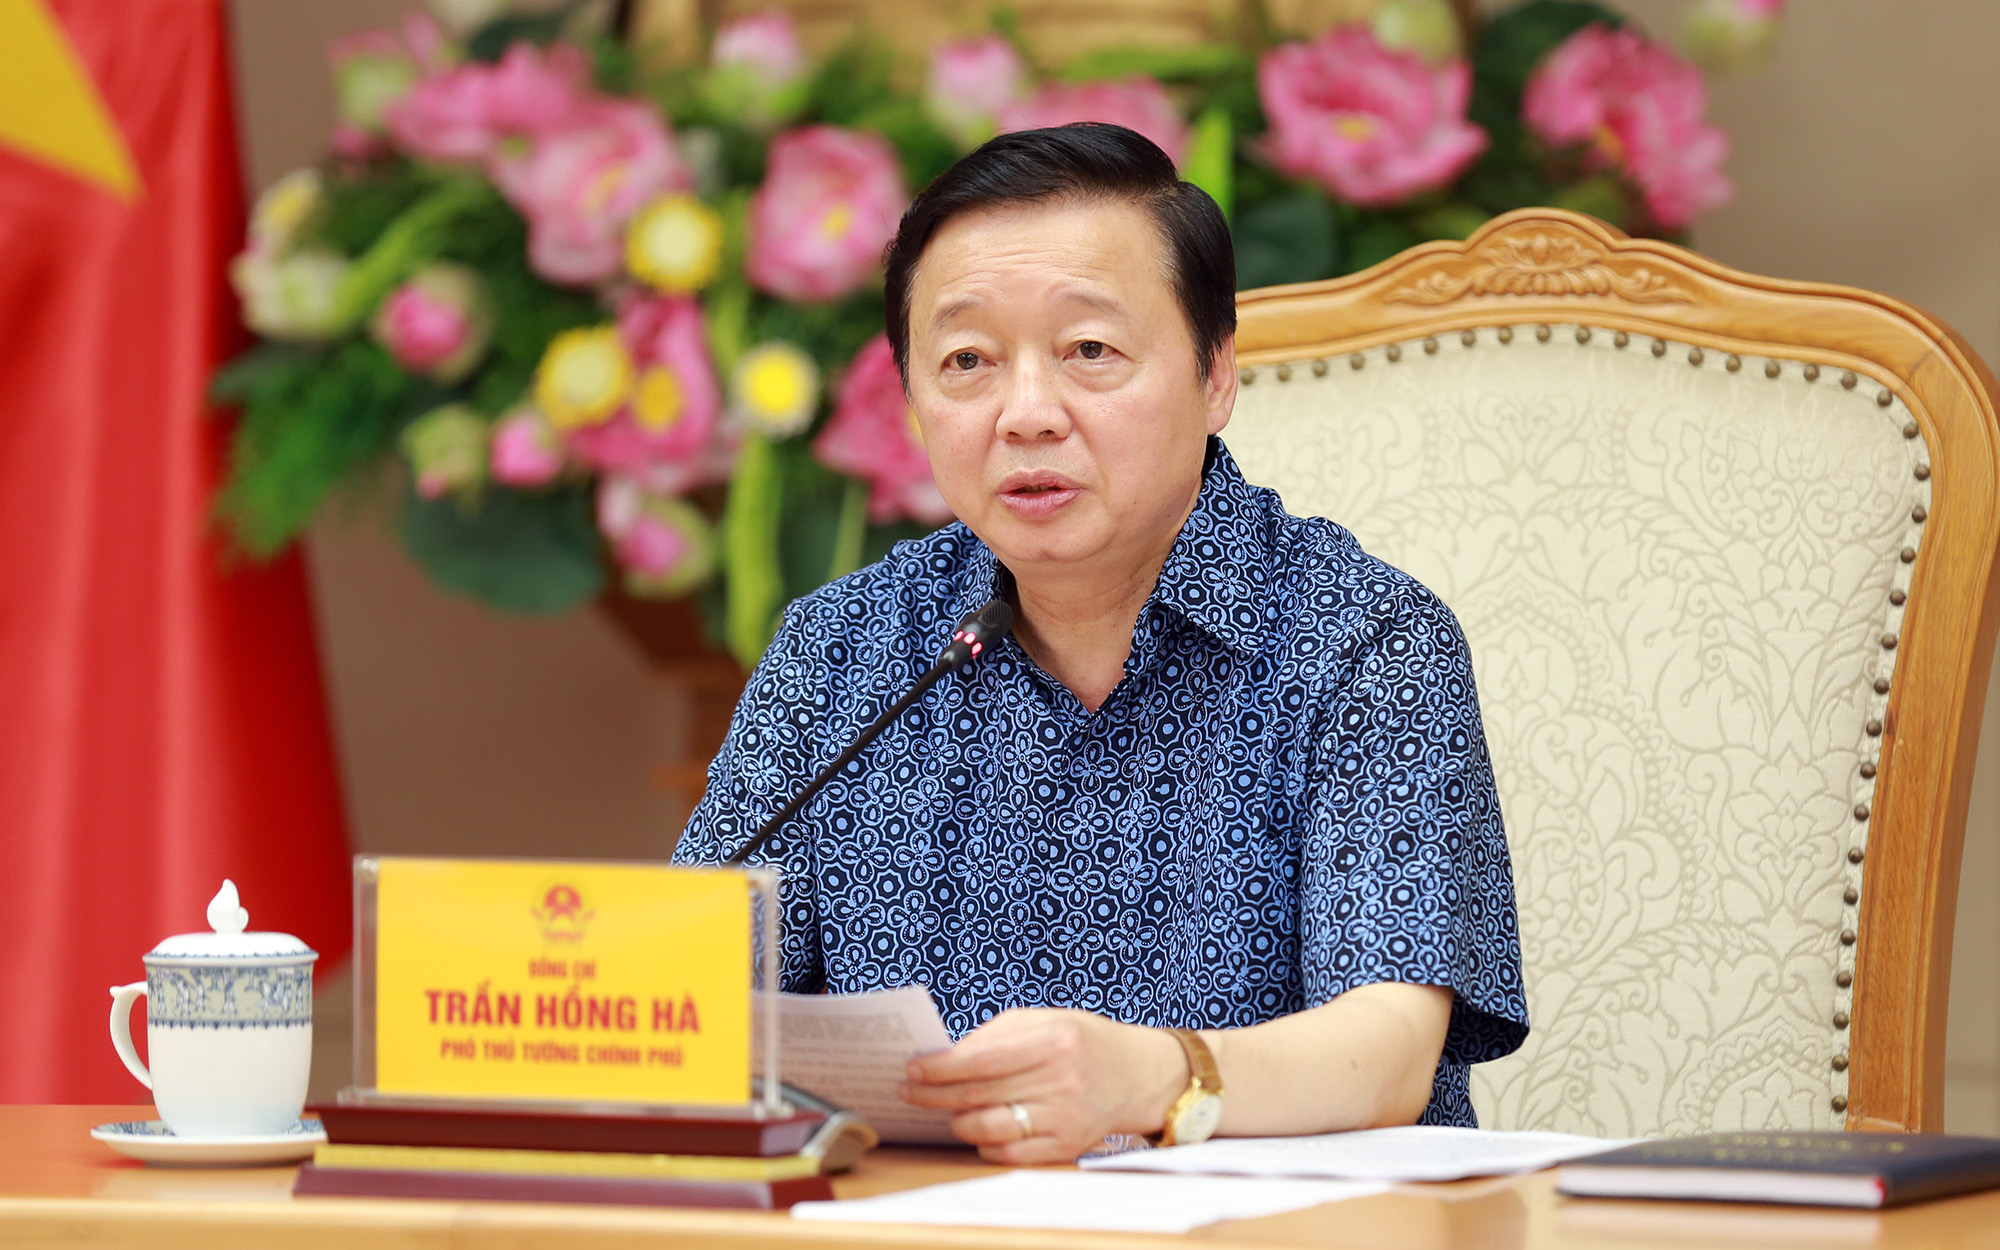 Phó Thủ tướng Trần Hồng Hà: Quy hoạch đô thị và nông thôn phải chi tiết đến từng khu đất, thửa đất, có tầm nhìn, giá trị hàng trăm năm, và phân kỳ thực hiện theo từng giai đoạn của chiến lược phát triển kinh tế-xã hội - Ảnh: VGP/Minh Khôi